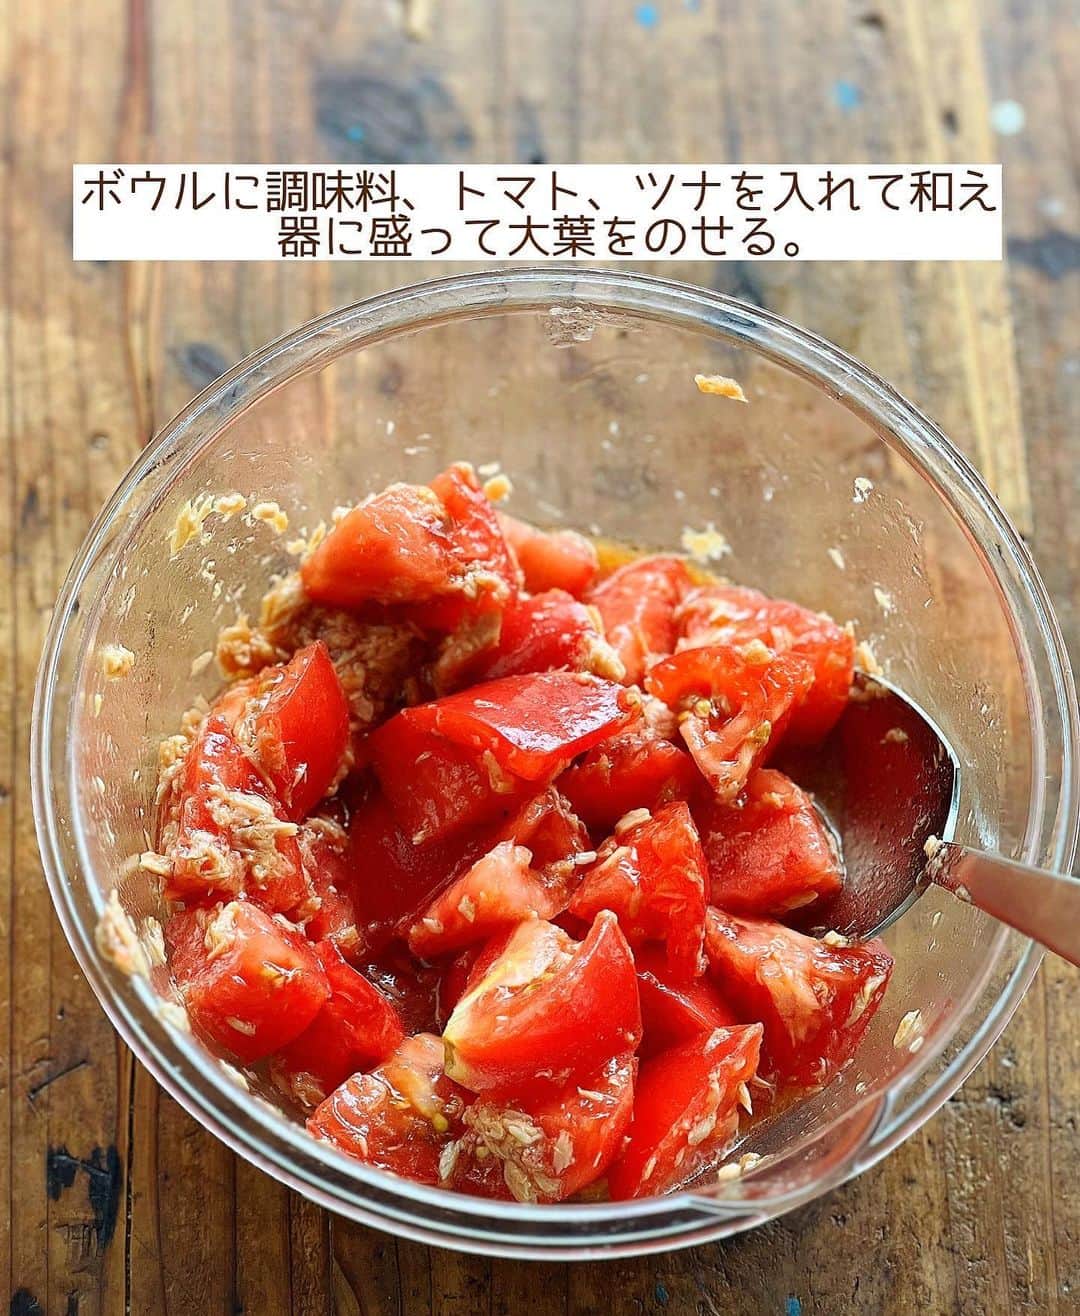 Mizuki【料理ブロガー・簡単レシピ】さんのインスタグラム写真 - (Mizuki【料理ブロガー・簡単レシピ】Instagram)「・一番好きなトマトの食べ方🍅 ⁡ ［#レシピ ］ ーーーーーーーーーーーーーーーー 和えるだけ！やみつきツナトマト ーーーーーーーーーーーーーーーー ⁡ ⁡ ⁡ ♔∴∵∴♔∴∵∴♔∴∵∴♔∴∵∴♔∴∵∴♔ おはようございます☺️ ⁡ 昨夜は#金スマ をご覧いただきまして ありがとうございました🙇‍♀️ 上手に編集していただいたおかげで 思ったよりは穏やかでした••• (怖い顔してましたけど😅笑) ⁡ ［黄金比率の衣］を使えば いろんな野菜の唐揚げができますので よかったらお試しくださいね💕 唐揚げにすると 野菜が苦手なお子さんも 食べやすくなりますよ〜😋🌸 ♔∴∵∴♔∴∵∴♔∴∵∴♔∴∵∴♔∴∵∴♔ ⁡ ⁡ ⁡ ⁡ ⁡ さて、今日は 先日リールでご紹介したレシピの 静止画バージョンです✨ ⁡ ▼ ▼ ▼ ▼ ▼ ▼ ⁡ 1番好きなトマトの食べ方 ''やみつきツナトマト'' ⁡ ボウル1つで和えるだけ💕 フレッシュトマトに ツナを合わせてボリュームアップ！！ さっぱりコクのある中華風の味付けで やみつきになるおいしさですよ〜🤭 ⁡ ハズレのトマトもおいしくなるので よかったらお試しくださいね🍅✨ ⁡ ⁡ ⁡ ⋱⋰ ⋱⋰ ⋱⋰ ⋱⋰ ⋱⋰ ⋱⋰ ⋱⋰ ☑︎簡単・時短・節約レシピ更新中 @mizuki_31cafe ⁡ ☑︎謎の暮らし＆変なライブ垢 @mizuki_kurashi ⋱⋰ ⋱⋰ ⋱⋰ ⋱⋰ ⋱⋰ ⋱⋰ ⋱⋰ ⁡ ⁡ ⁡ ＿＿＿＿＿＿＿＿＿＿＿＿＿＿＿＿＿＿＿ 【2〜3人分】 トマト...2個 ツナ...1缶(70g) ●醤油・酢...各小2 ●砂糖・ごま油...各小1 大葉(千切り)...適量 ⁡ 1.トマトは一口大に切る。ツナは油を切る。 2.ボウルに●と1を入れて和え、器に盛って大葉をのせる。 ￣￣￣￣￣￣￣￣￣￣￣￣￣￣￣￣￣￣￣ ⁡ ⁡ 《ポイント》 ♦︎水煮のツナを使用する場合はごま油を少し増やすと◎ ♦︎大葉は一緒に和えてもOK！ ⁡ ⁡ ⁡ ⁡ ⁡ ⁡ ⋱⋰ ⋱⋰ ⋱⋰ ⋱⋰ ⋱⋰ ⋱⋰ ⋱⋰  愛用している調理器具・器など   #楽天ROOMに載せてます ‎𐩢𐩺  (ハイライトから飛べます🕊️) ⋱⋰ ⋱⋰ ⋱⋰ ⋱⋰ ⋱⋰ ⋱⋰ ⋱⋰ ⁡ ⁡ ⁡ ⁡ ⁡ ✼••┈┈┈┈┈••✼••┈┈┈┈┈••✼ 今日のごはんこれに決まり！ ‎𓊆#Mizukiのレシピノート 500品𓊇 ✼••┈┈┈┈┈••✼••┈┈┈┈┈••✼ ⁡ ˗ˏˋ おかげさまで25万部突破 ˎˊ˗ 料理レシピ本大賞準大賞を受賞しました✨ ⁡ 6000点の中からレシピを厳選し まさかの【500レシピ掲載】 肉や魚のメインおかずはもちろん 副菜、丼、麺、スープ、お菓子 ハレの日のレシピ、鍋のレシピまで 全てこの一冊で完結 𓌉◯𓇋 (全国の書店・ネット書店で発売中) ⁡ ⁡ ⁡ ⁡ ⁡ #やみつきツナトマトm #トマト #トマトレシピ #ツナ #副菜 #副菜レシピ #中華サラダ #マリネ #夏野菜 #夏野菜レシピ #節約料理 #簡単料理  #時短料理 #料理 #mizukiレシピ  #アルモンデ #時短レシピ #節約レシピ #簡単レシピ」6月17日 7時13分 - mizuki_31cafe